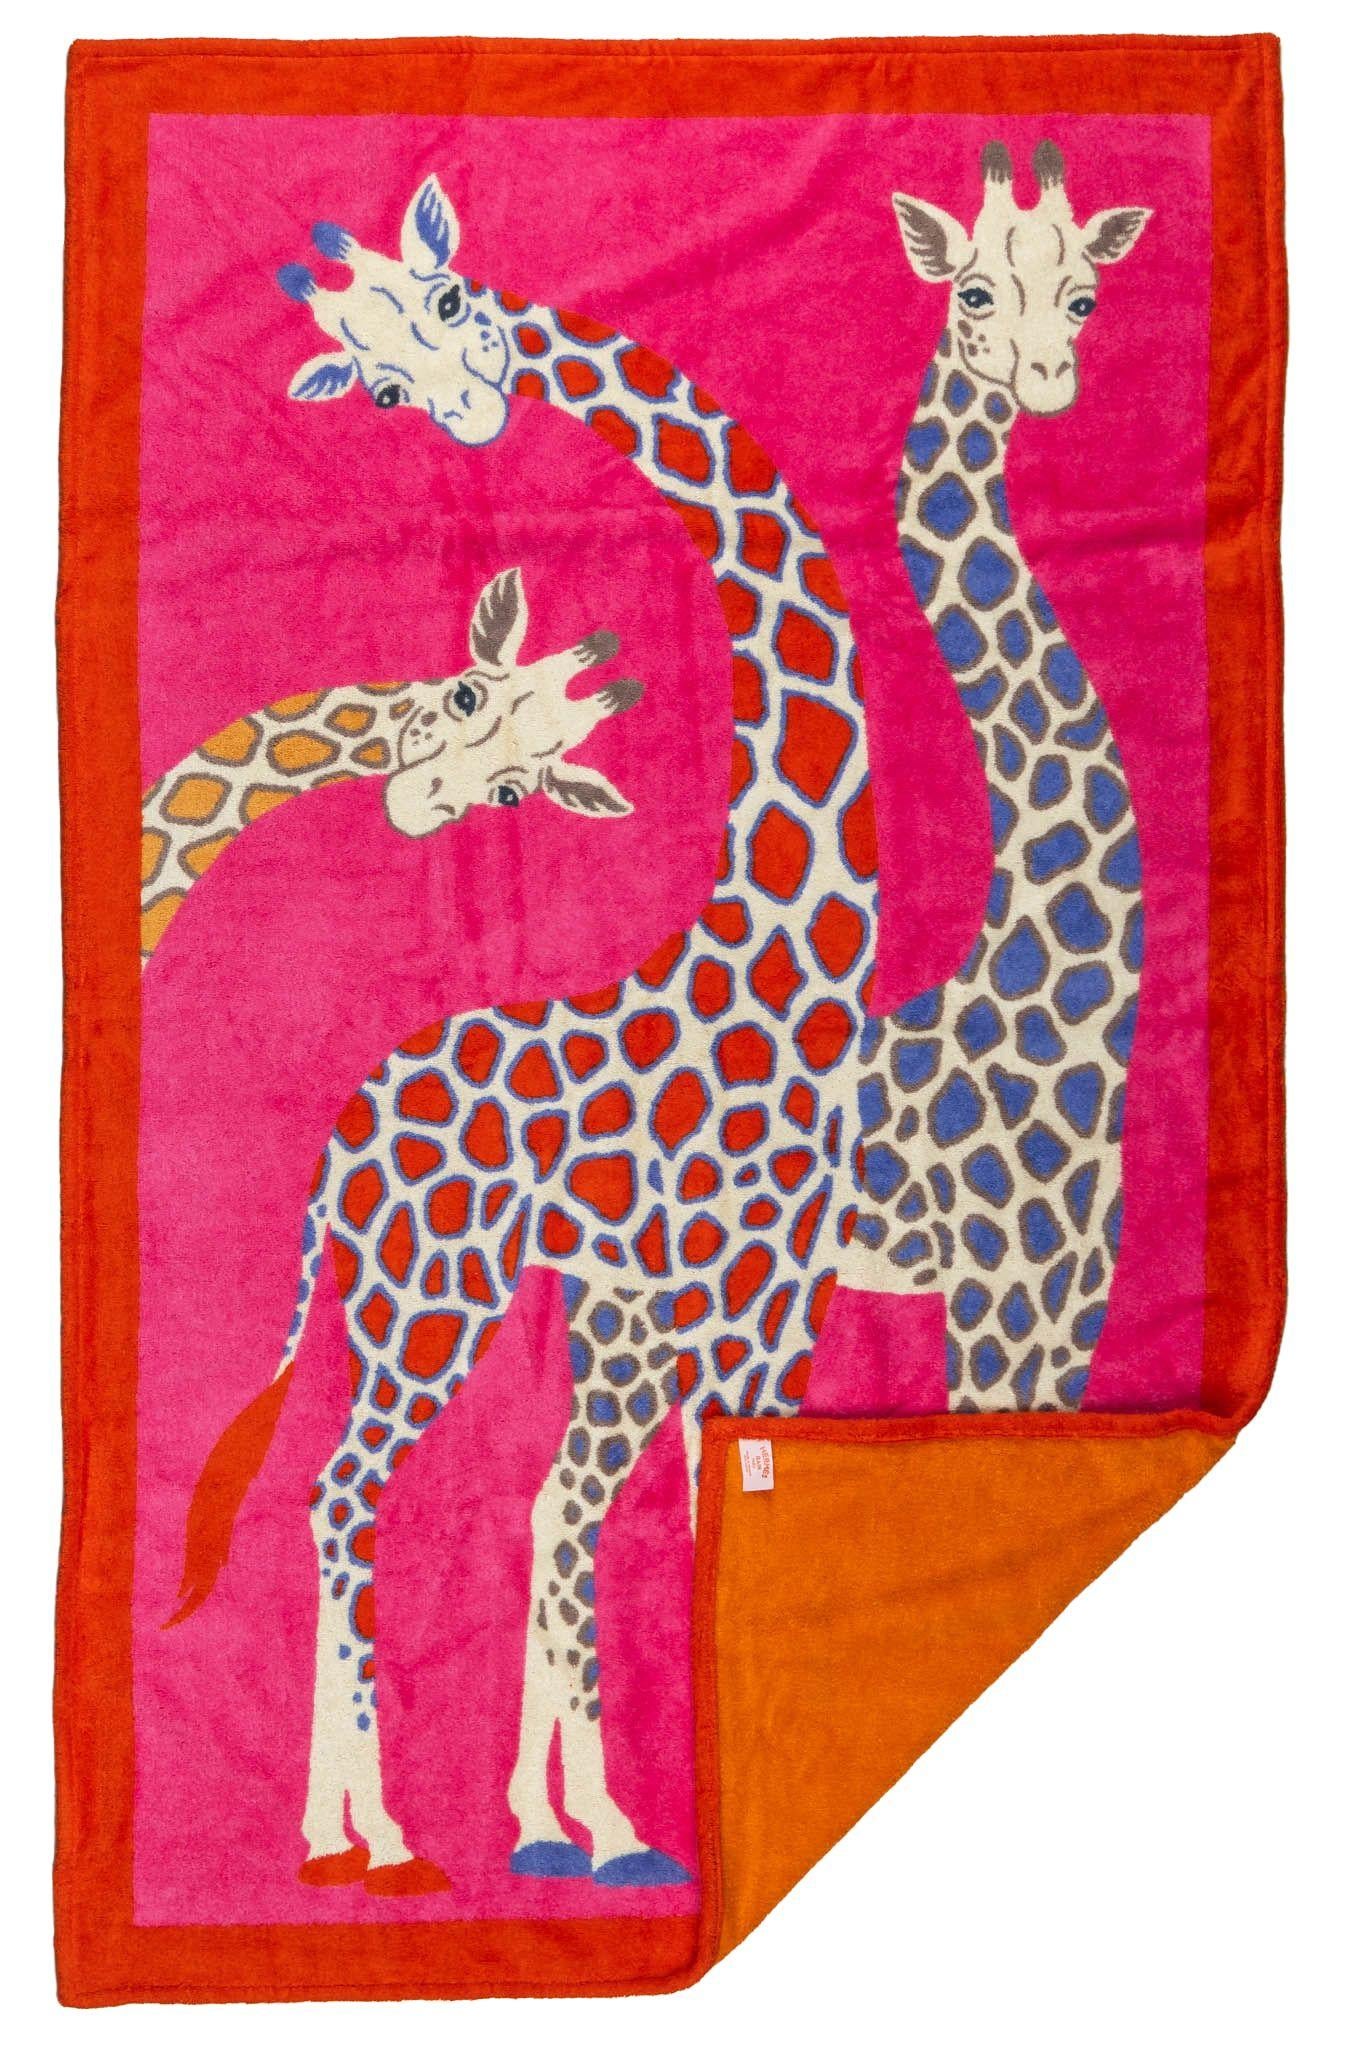 Serviette de plage en coton Hermès de couleur fuchsia et rouge avec un motif de girafes. Livré avec sa boîte d'origine.